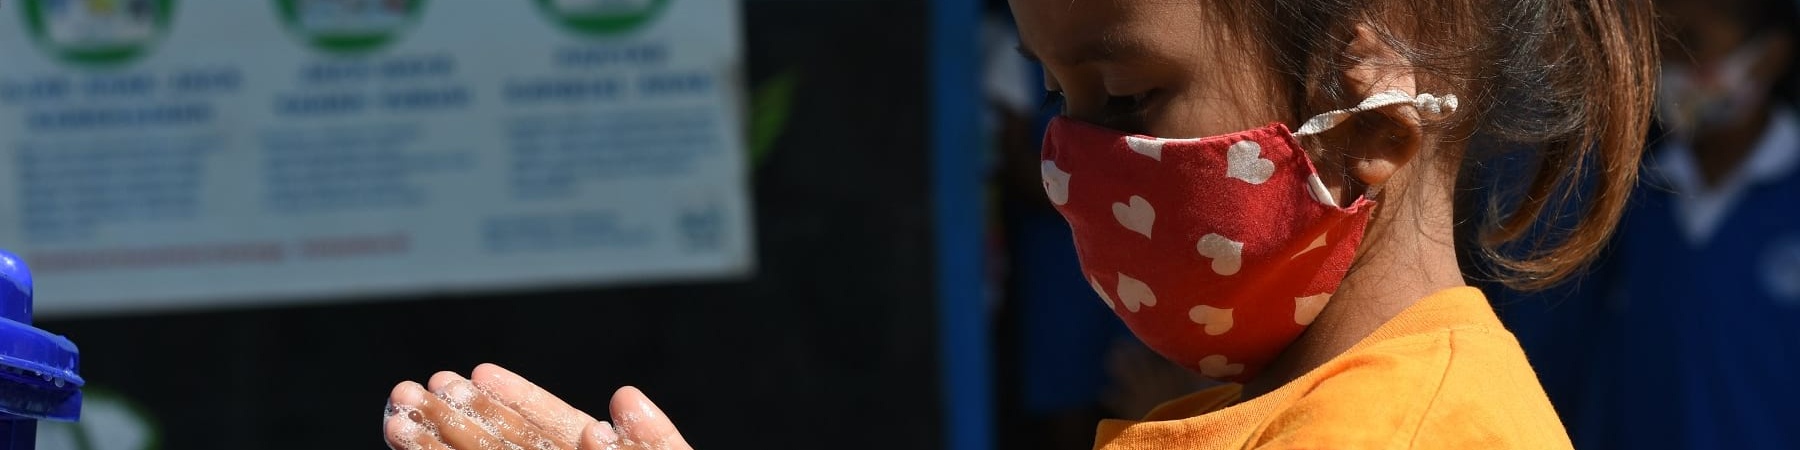 bambina indonesiana di profilo si lava le mani mentre indossa mascherina colorata sul viso.